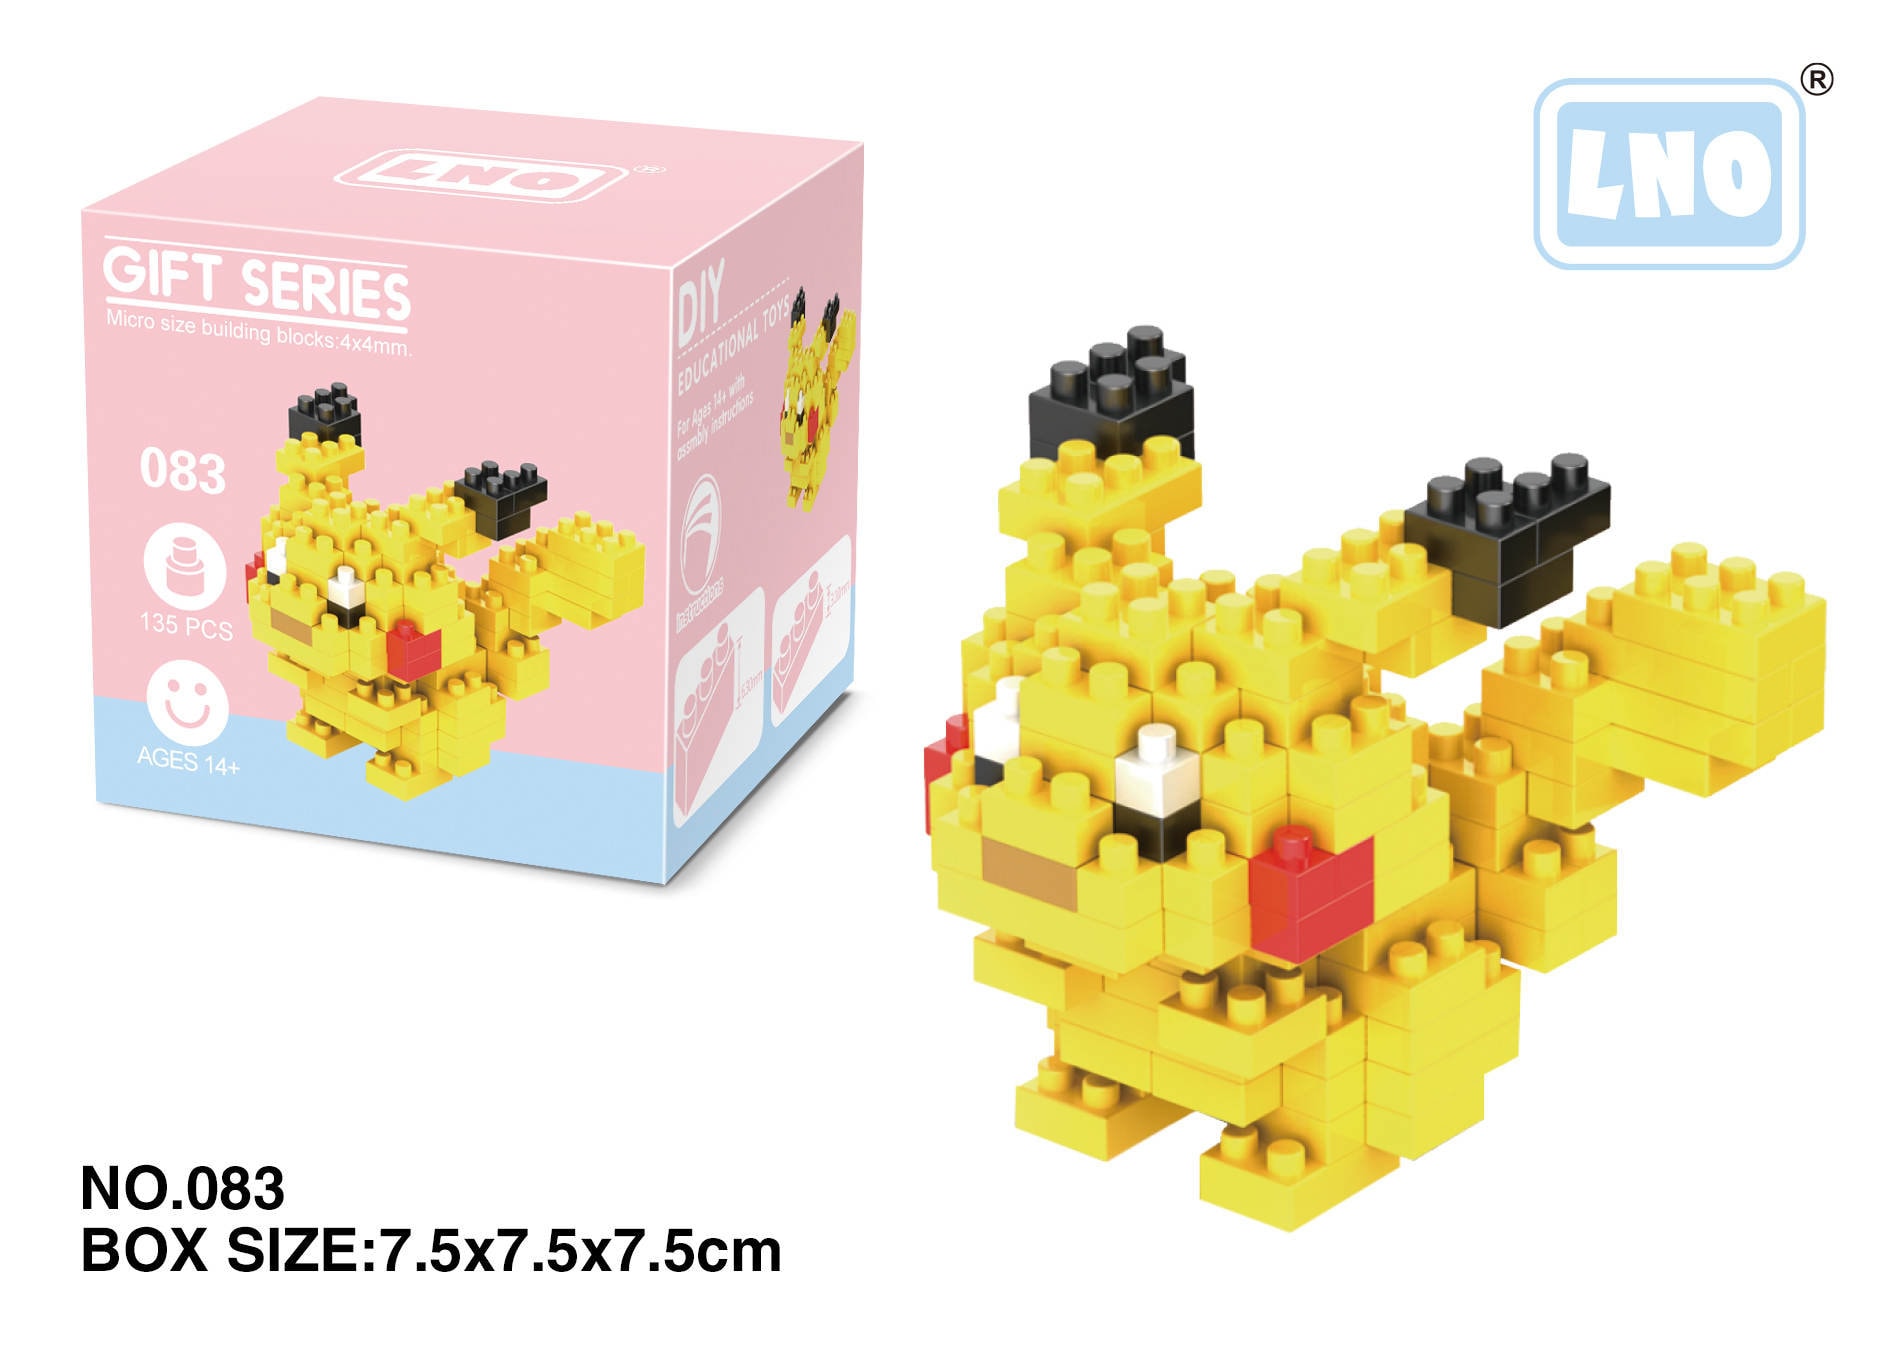 Nanoblock Serie Pokémon Pikachu y Más Mini Micro Bloques de Construcción  Edad 12